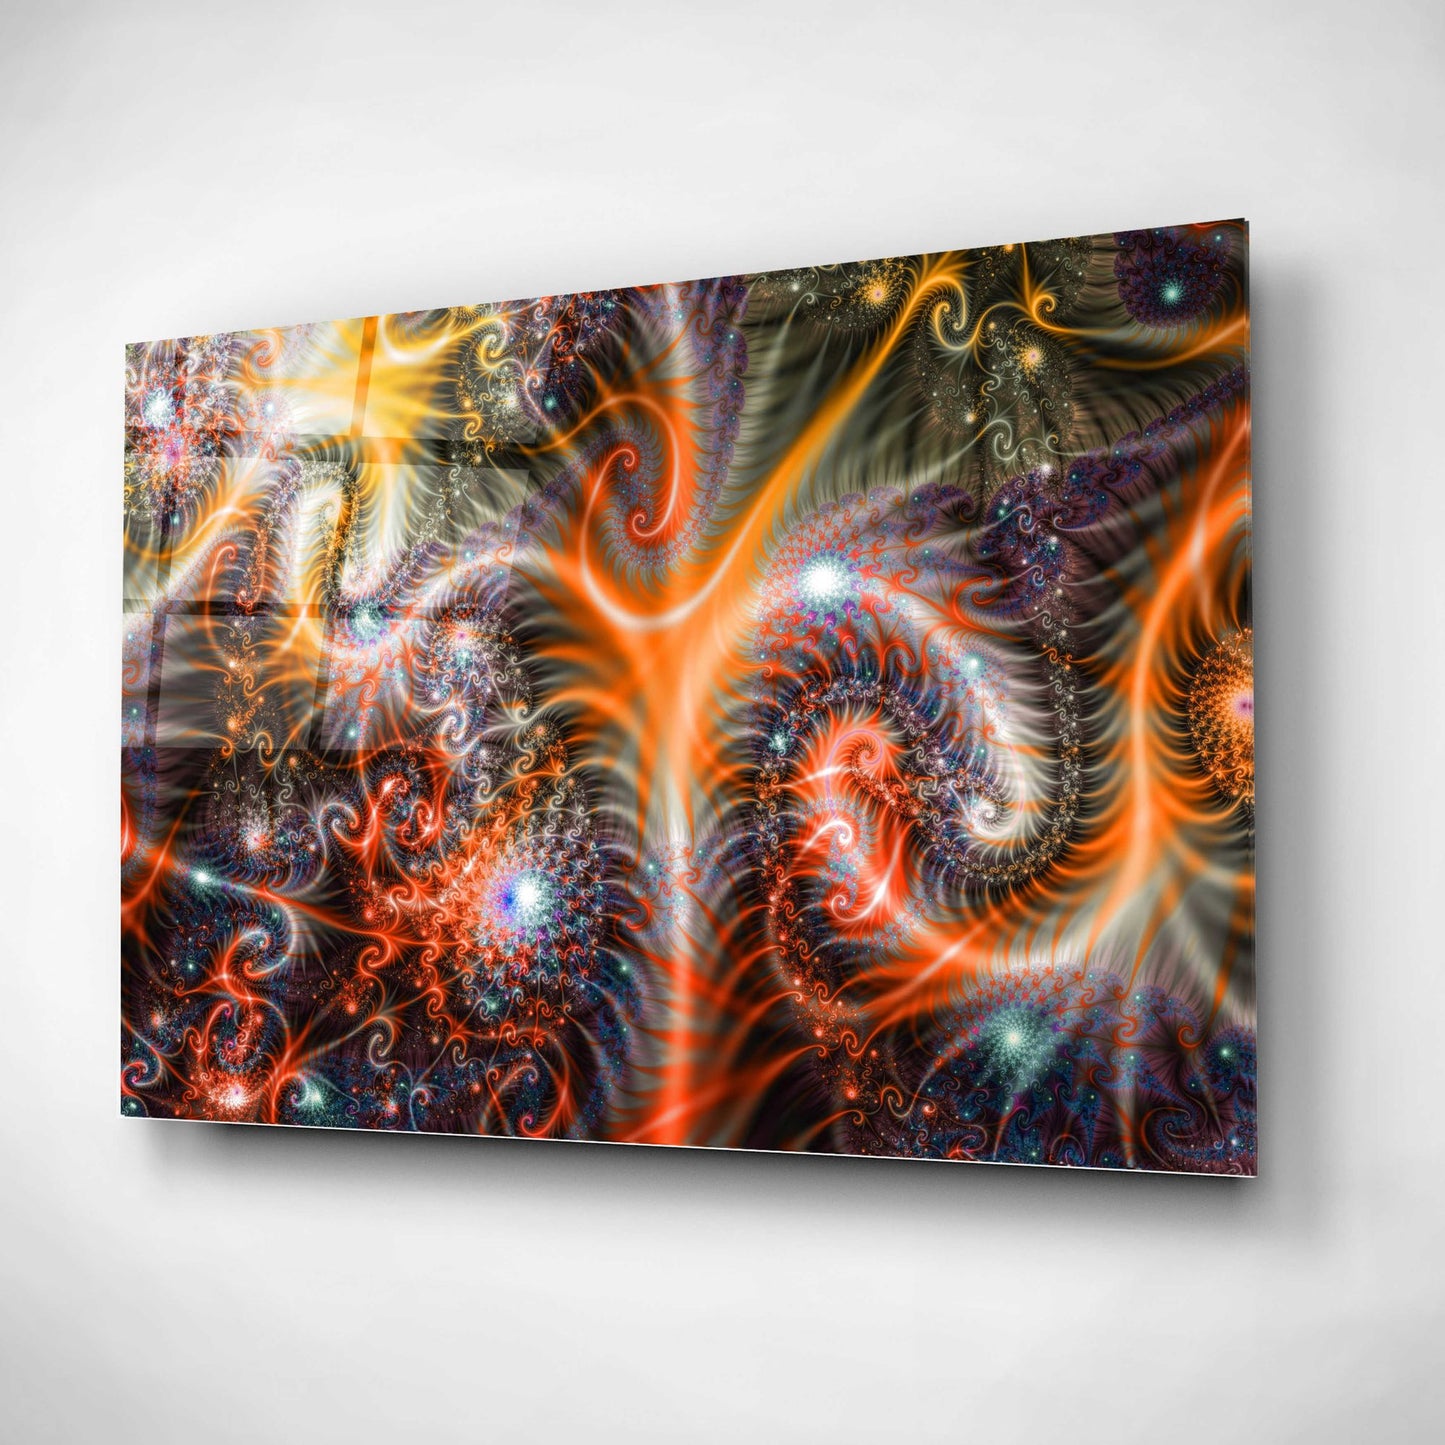 Epic Art 'Amoeba' Acrylic Glass Wall Art